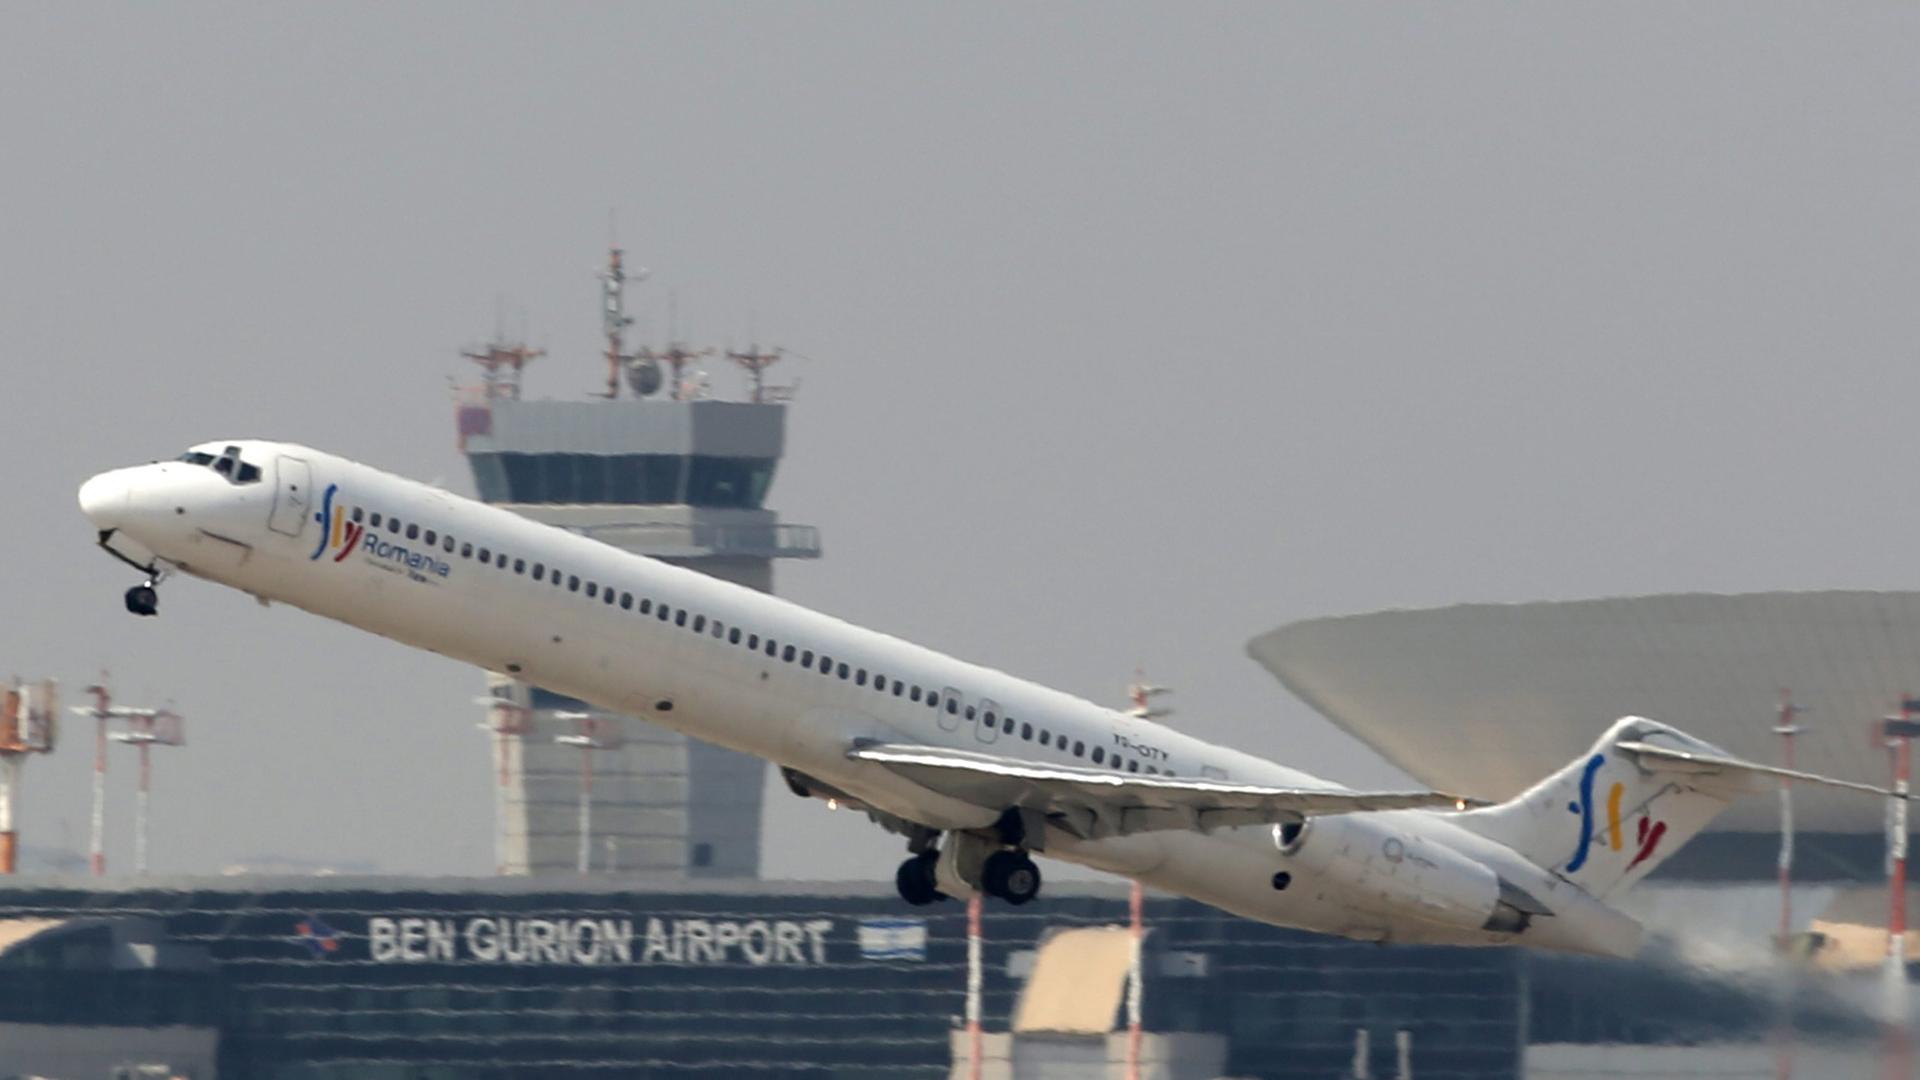 Ein Flugzeug der Fluglinie Romania hebt vor Gebäuden des Flughafens Ben Gurion in Tel Aviv ab.